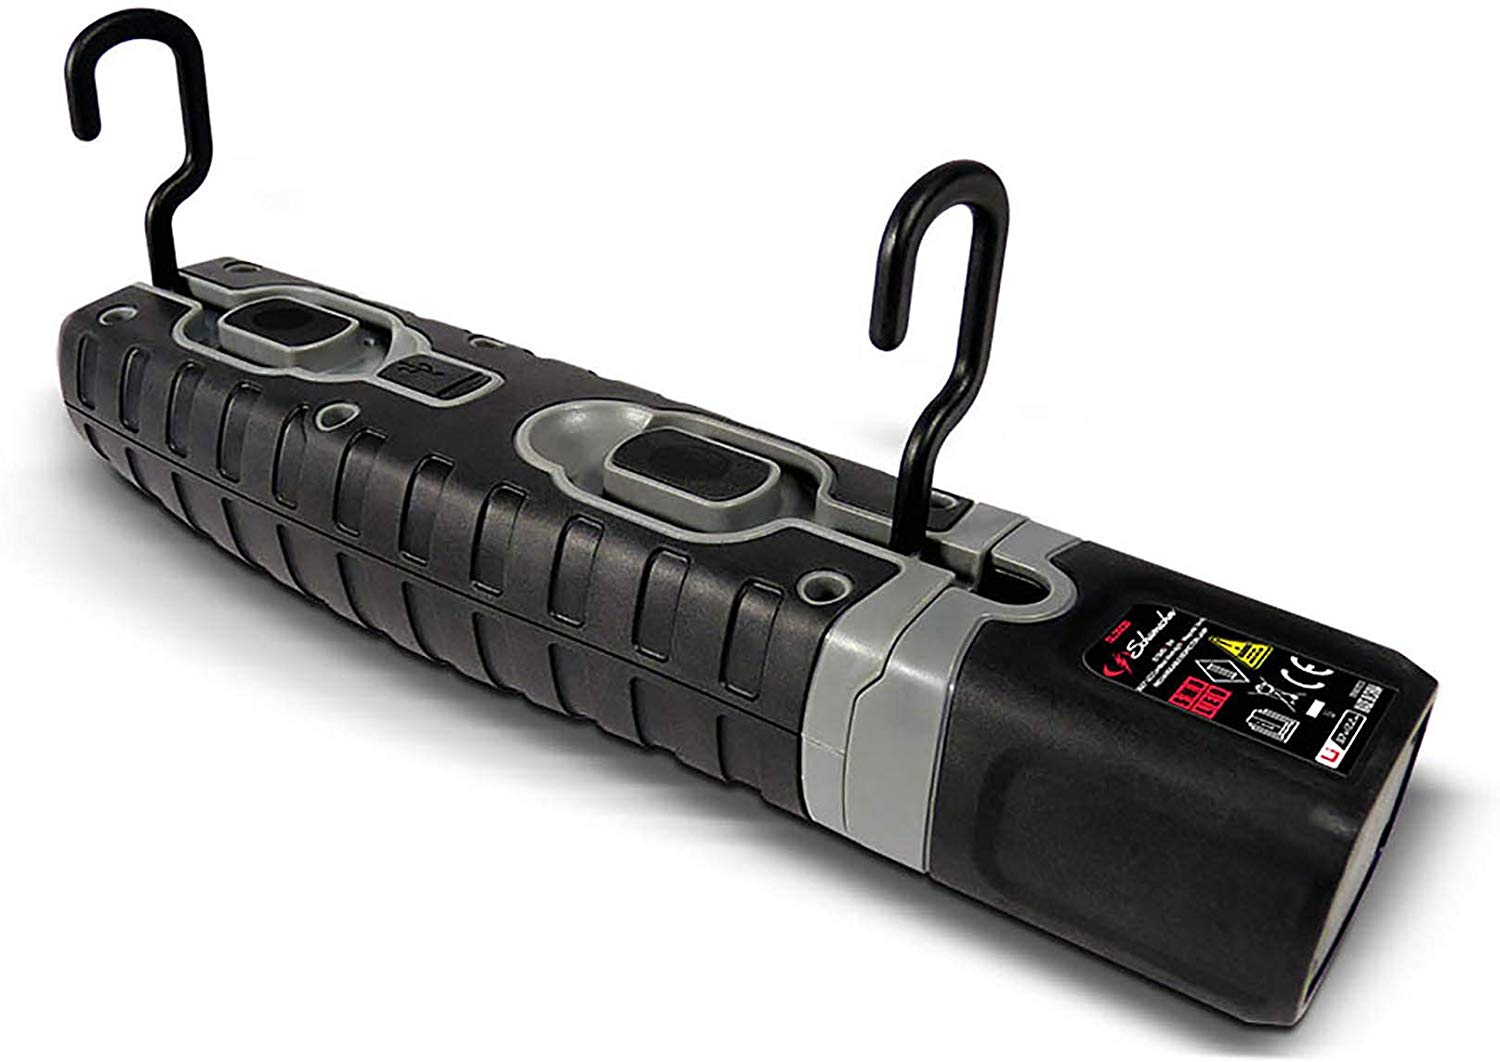 Schumacher SL360BU Rechargeable Worklight - MPR Tools & Equipment